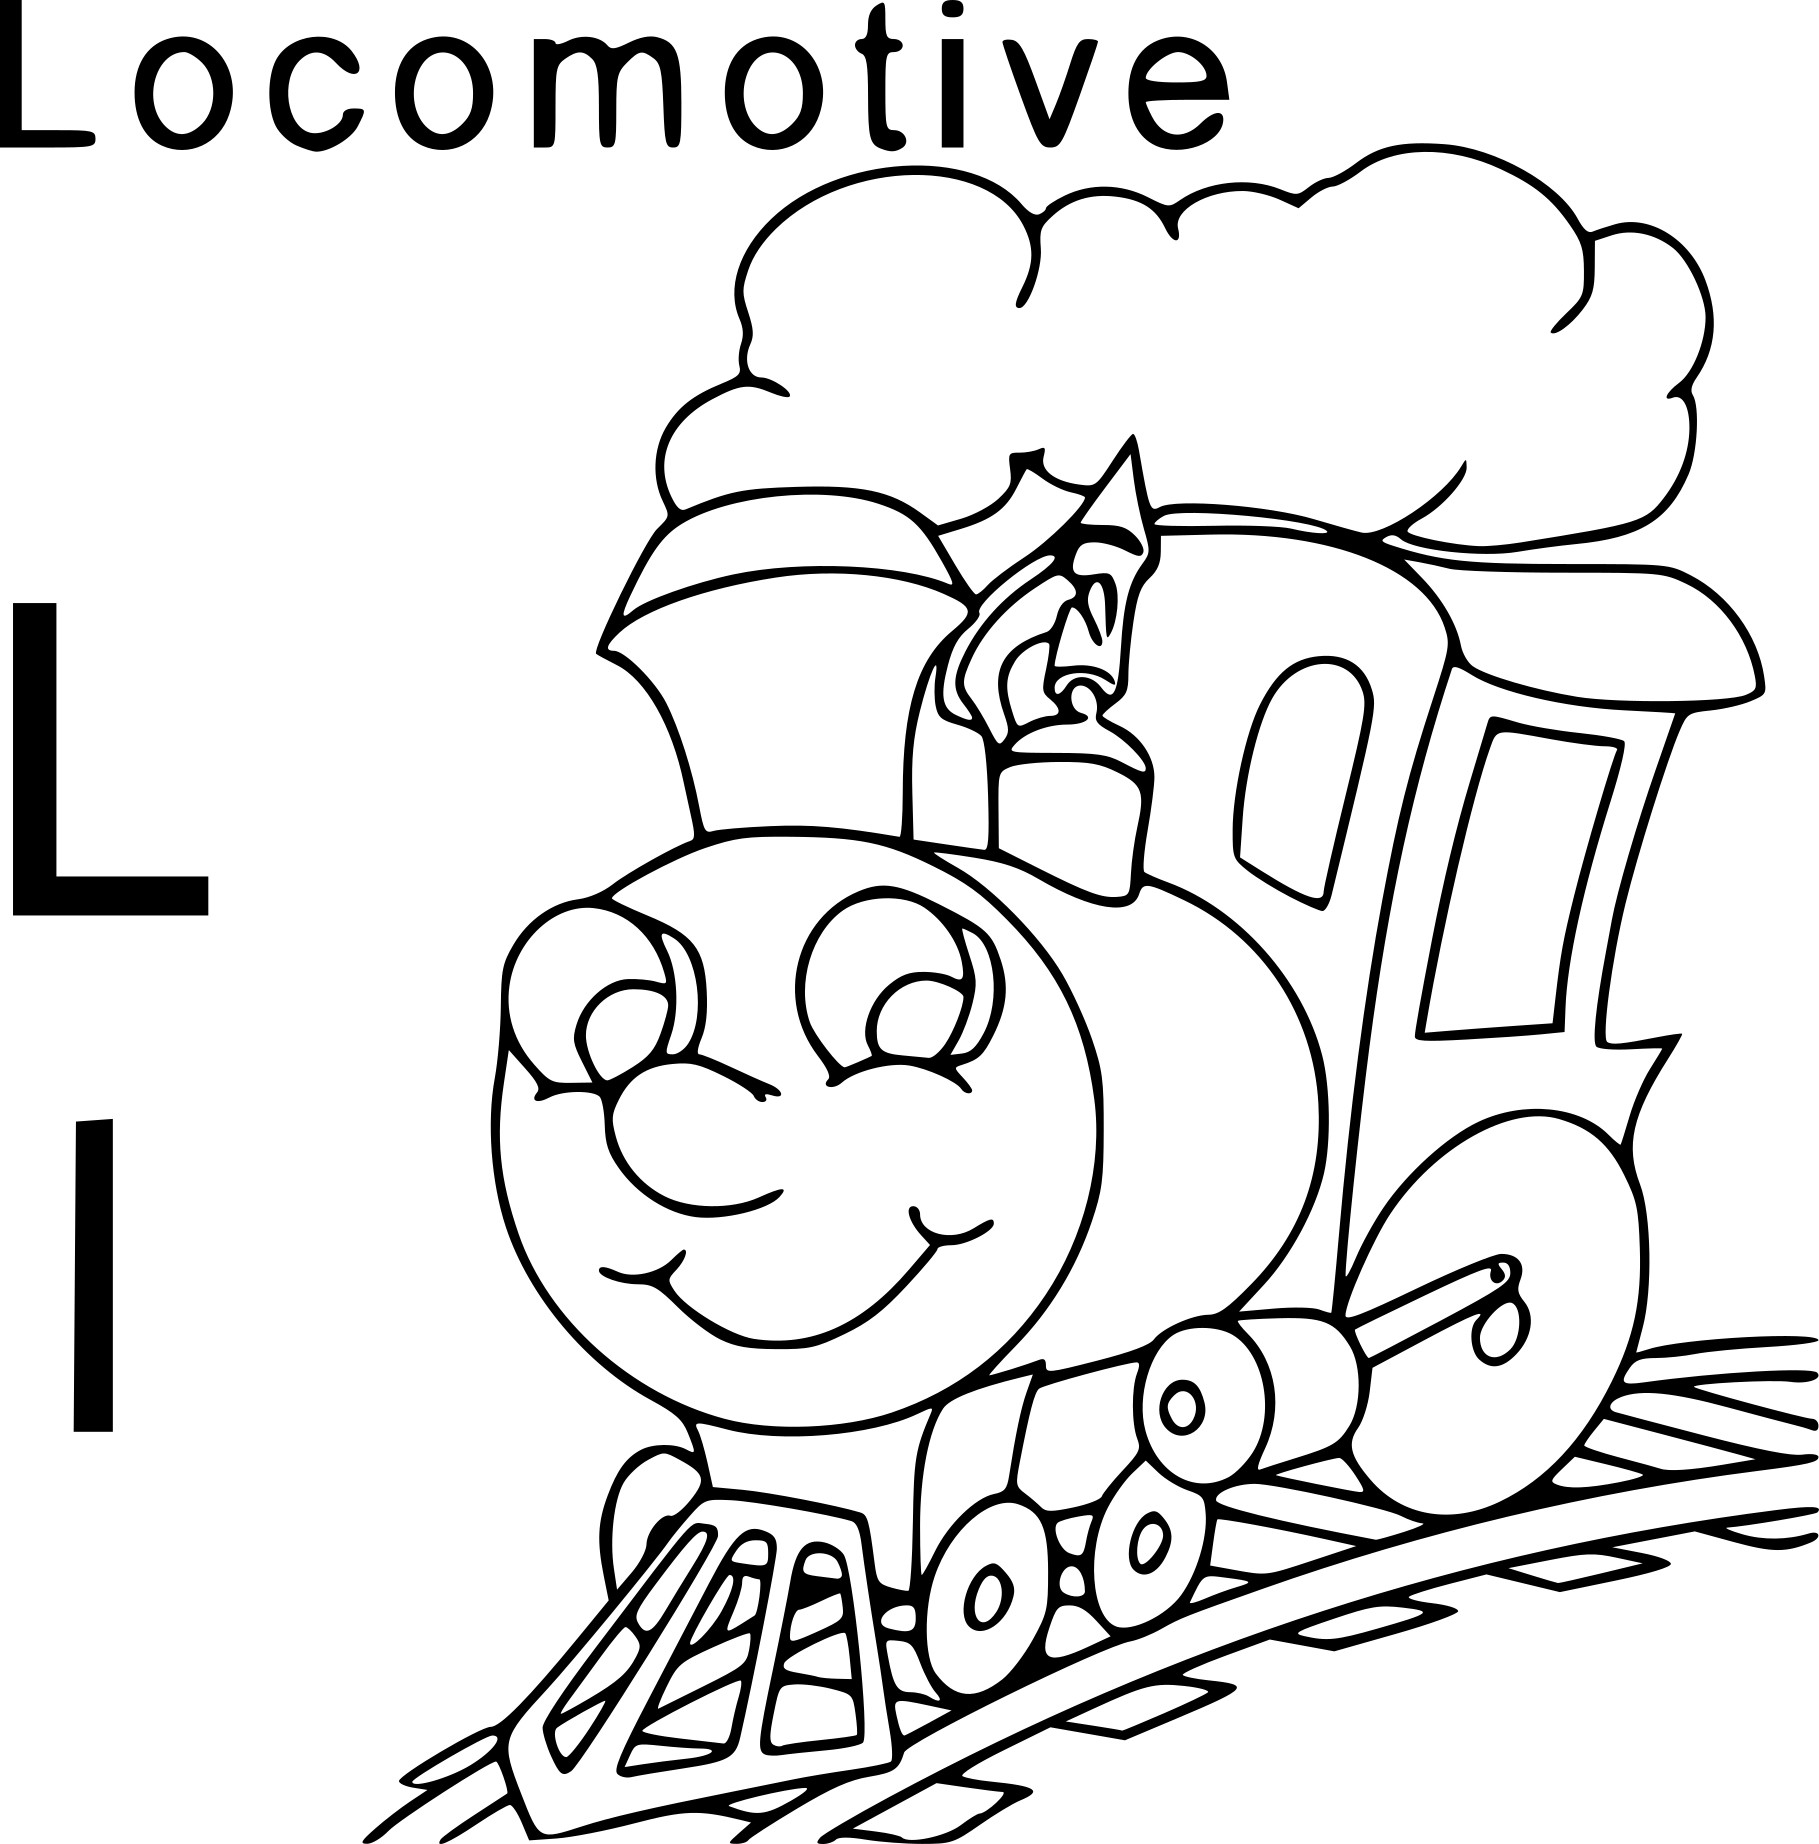 Coloriage L comme locomotive